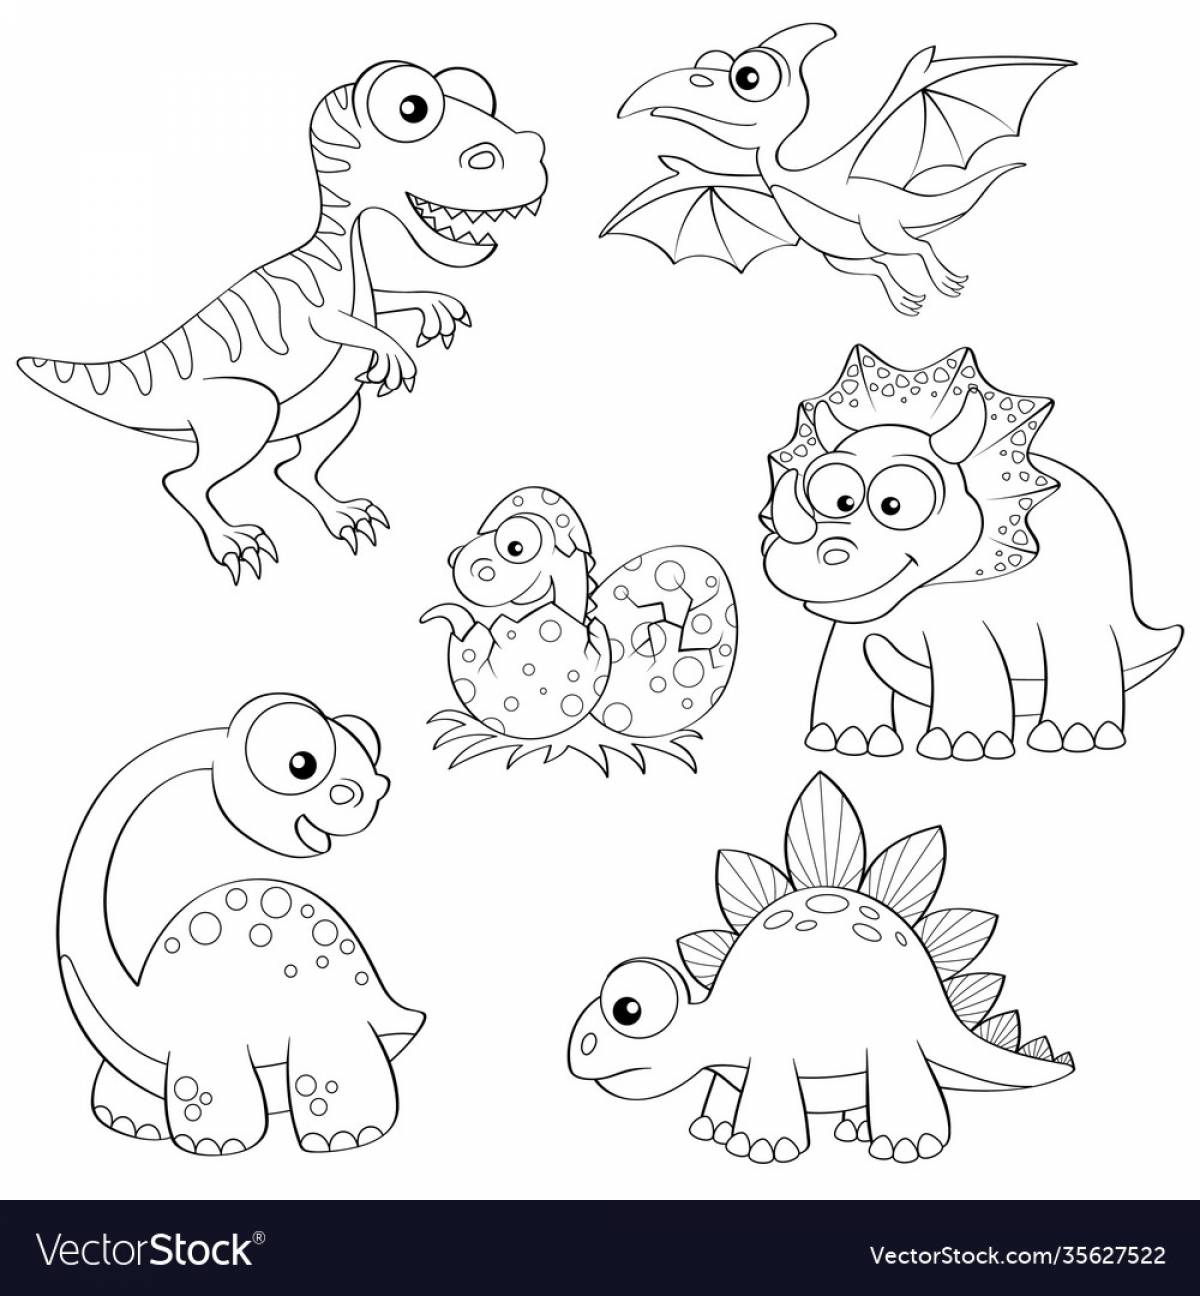 Динозавр маленький #1